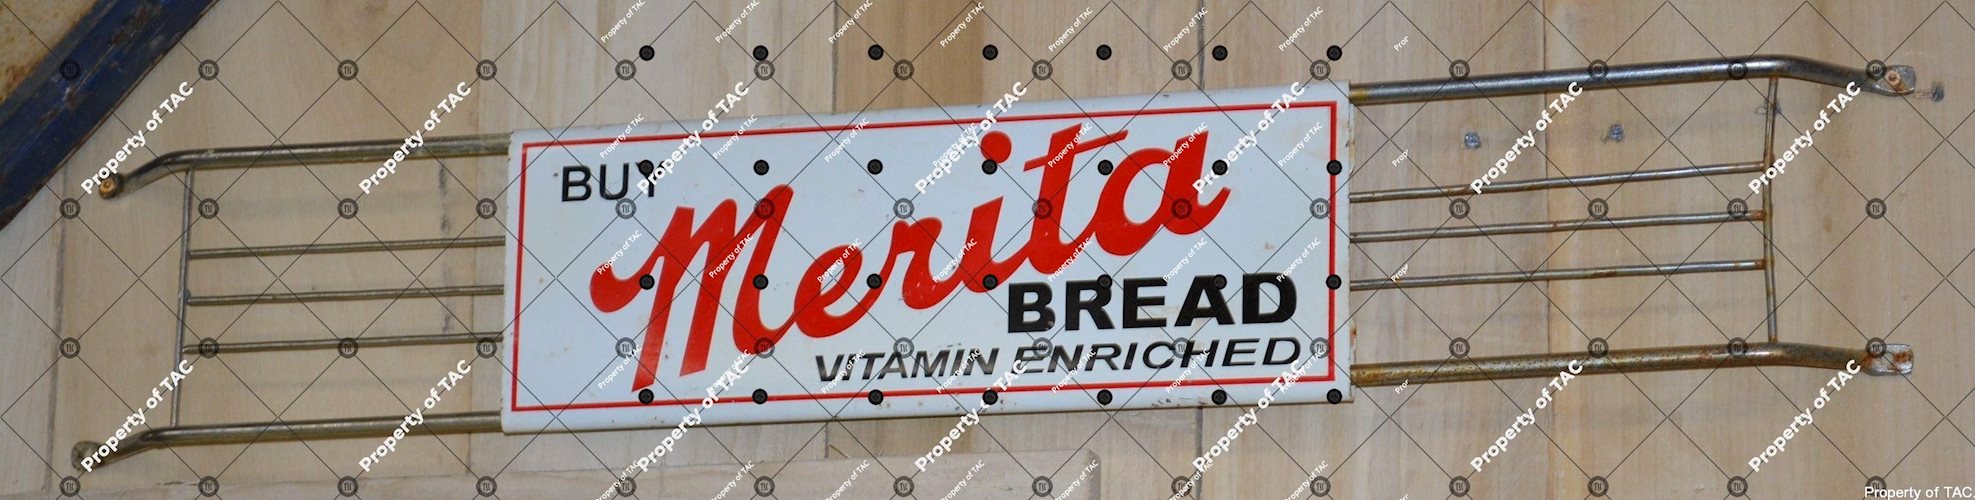 Buy Merita Bread Vitamin Enriched door push